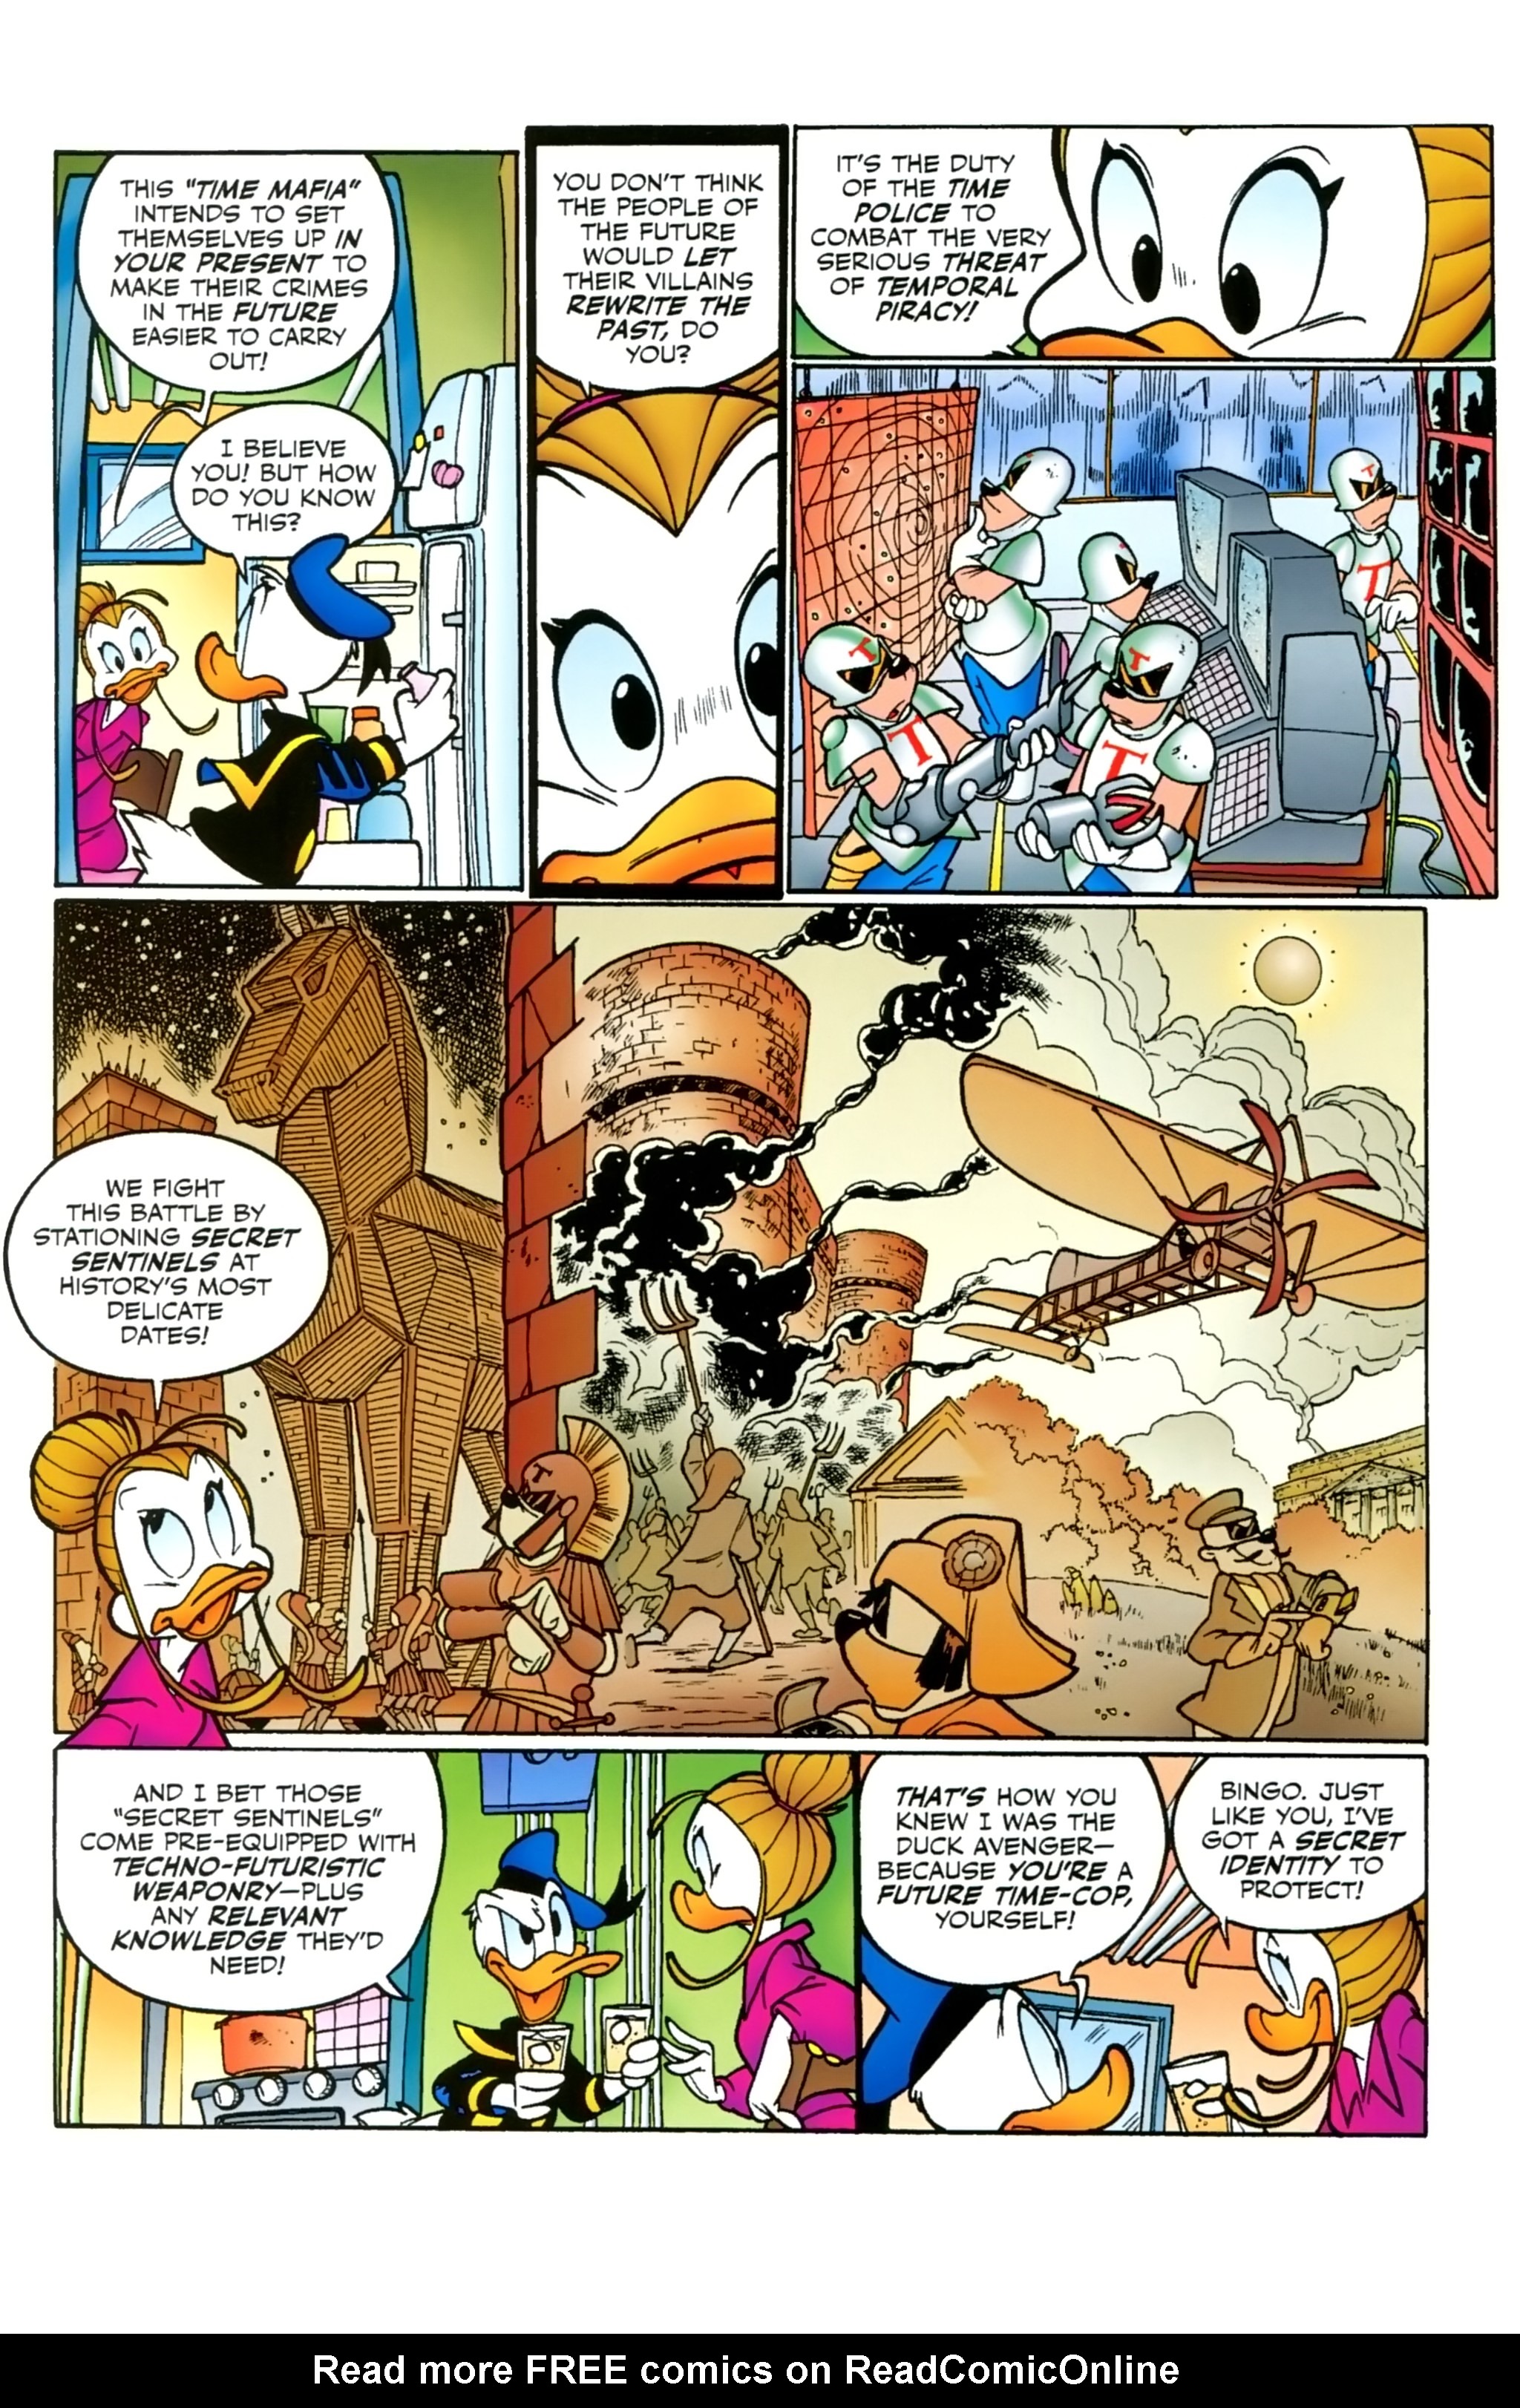 Read online Duck Avenger comic -  Issue #1 - 50